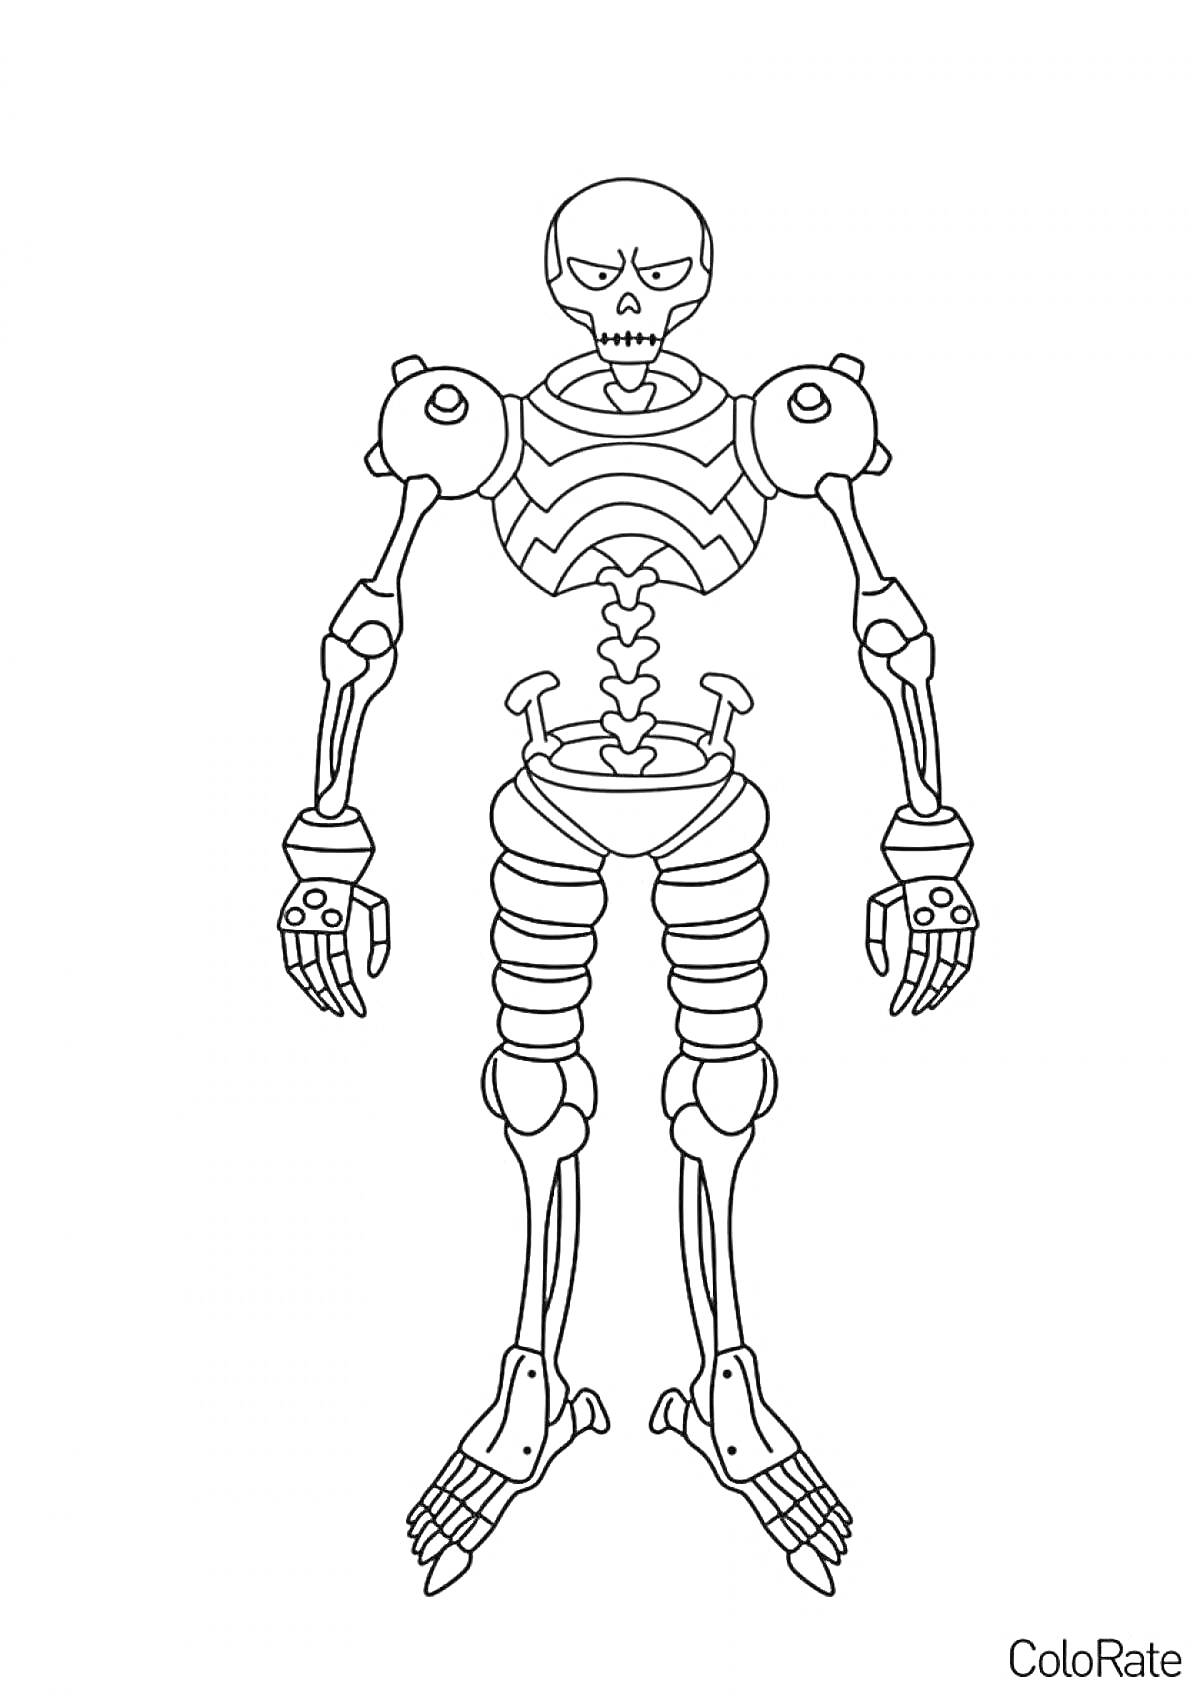 Раскраска Скелет с элементами брони на плечах и ногах, скелетные суставы, костяные руки, череп